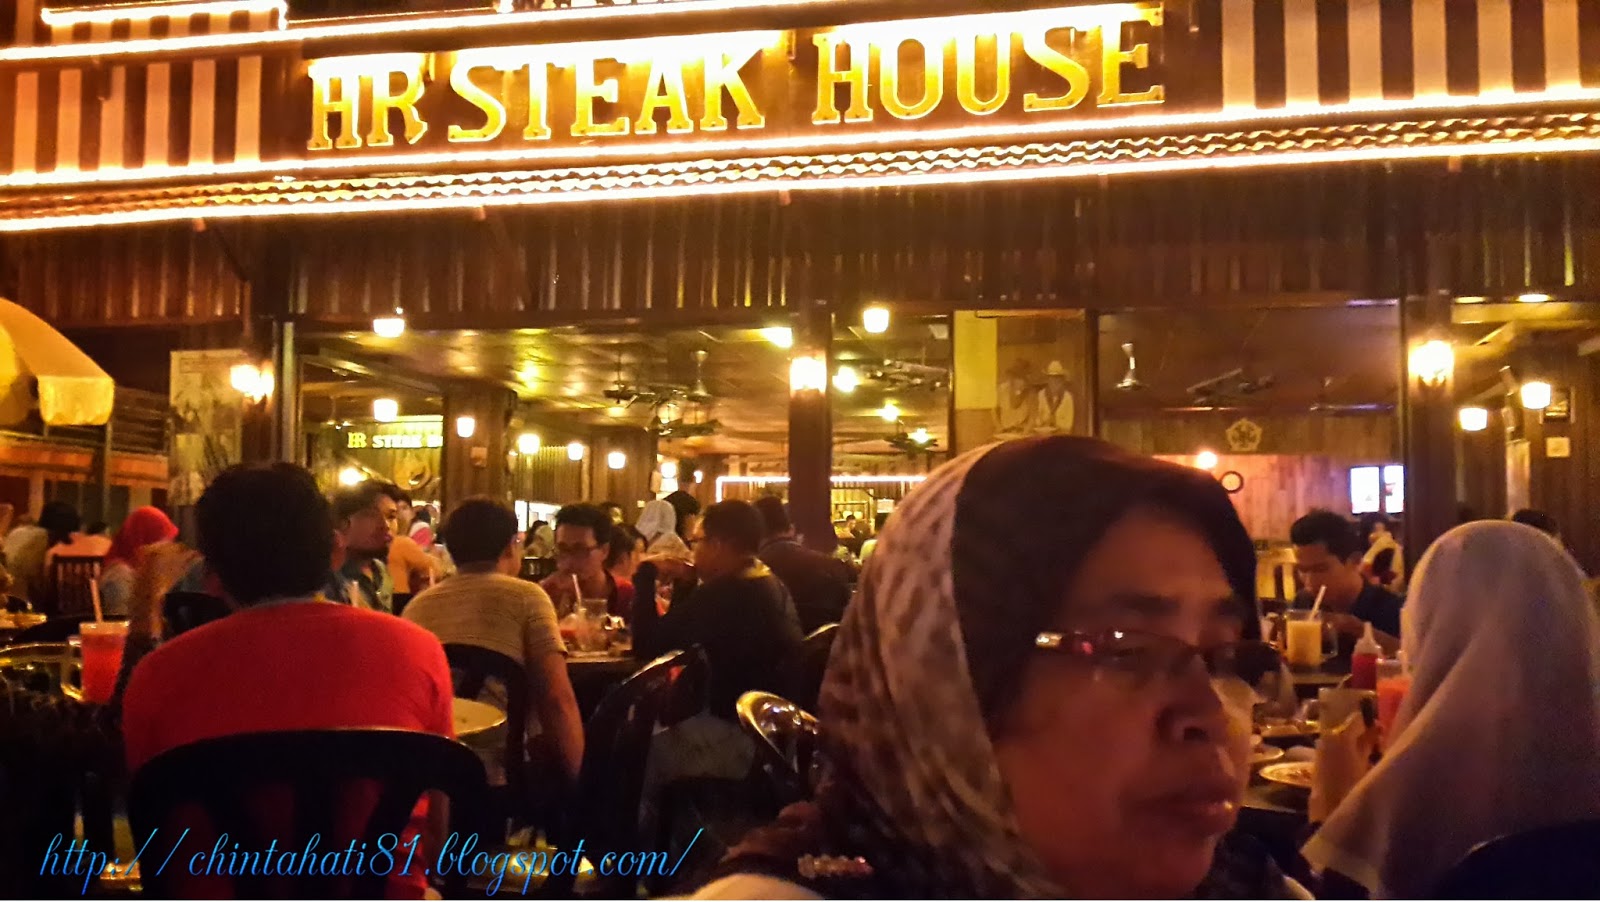 Hr steak house